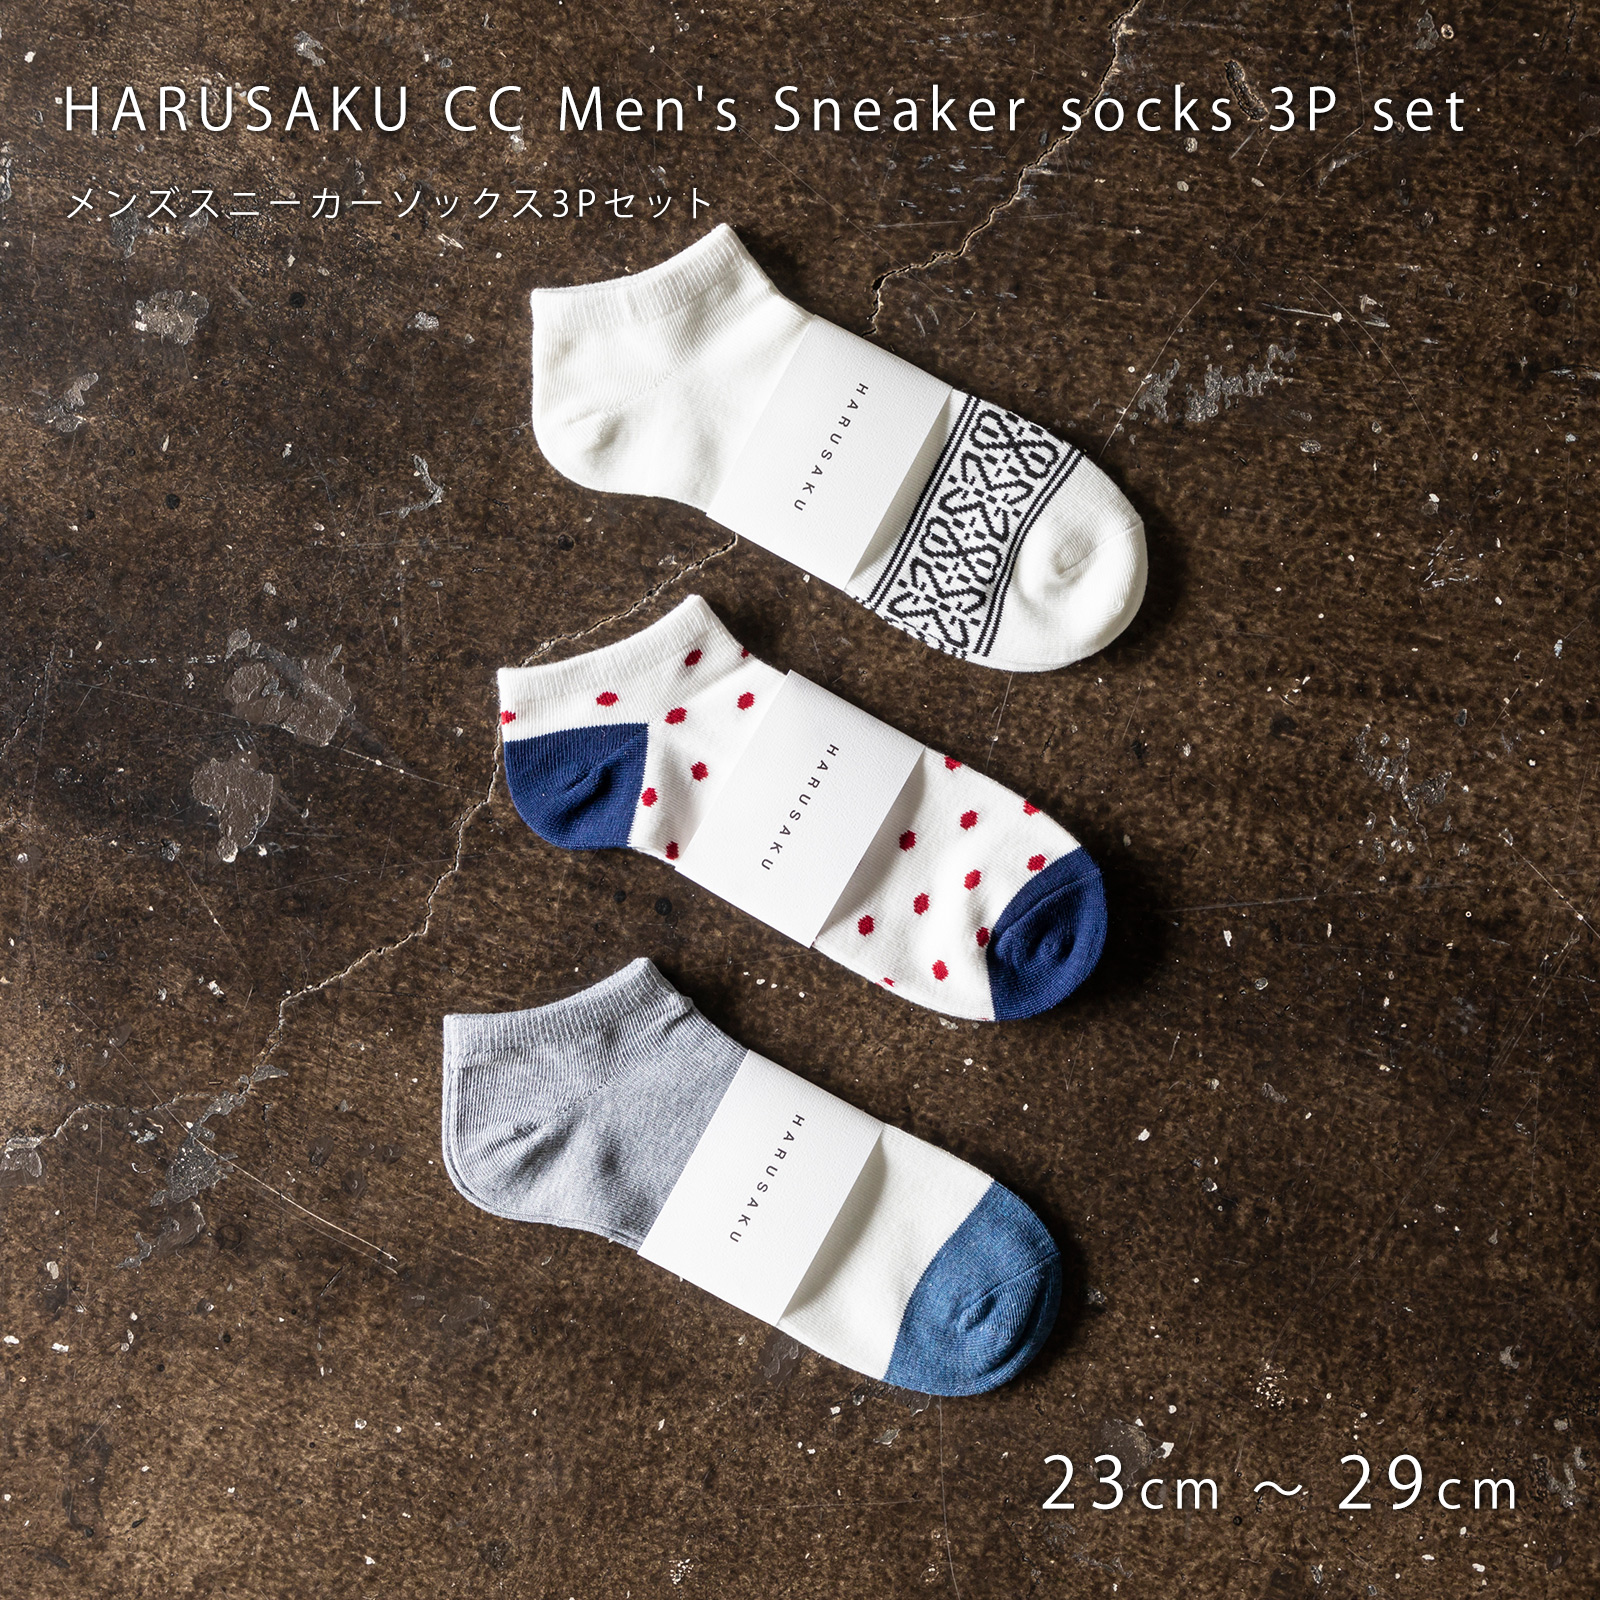 メンズ靴下専門ブランド Harusaku Cc Men S Sneaker Socks 3p Set E メンズスニーカーソックス3pセット 153